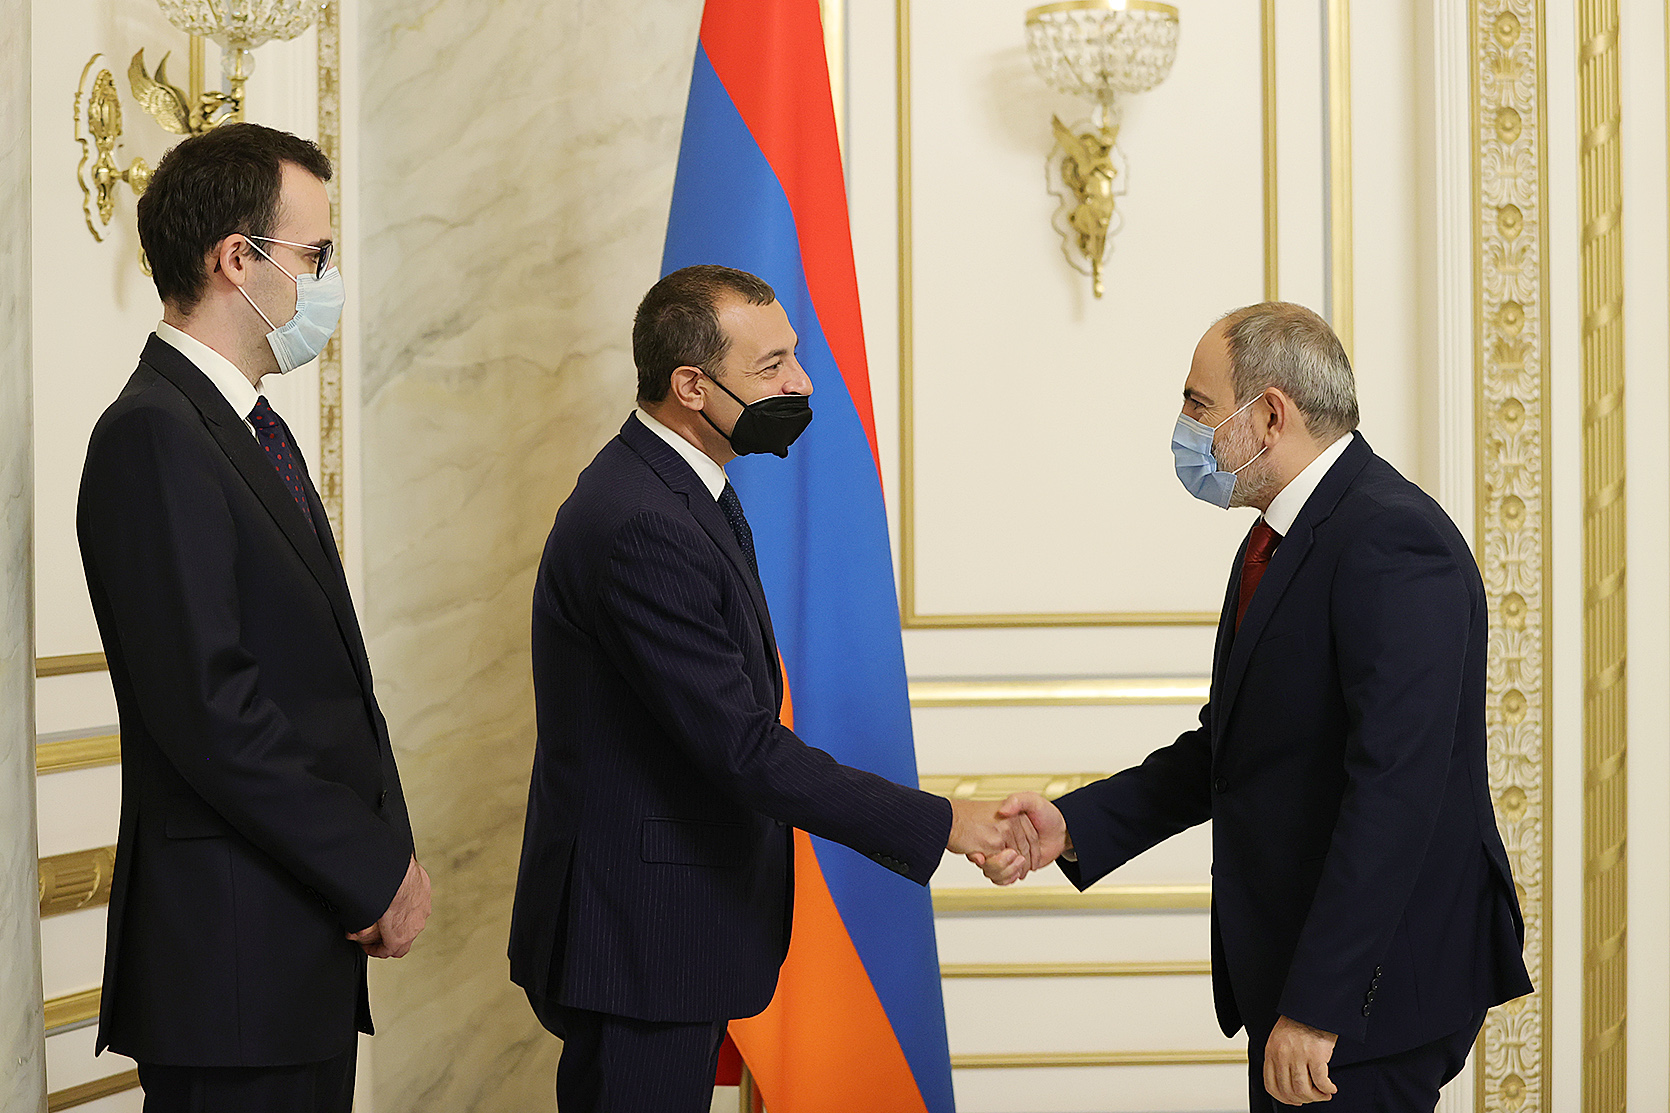 Իտալական կողմը շահագրգռված է Հայաստանի հետ ներդրումային նոր ծրագրերի իրականացմամբ. ՀՀ վարչապետն ընդունել է Իտալիայի դեսպանին